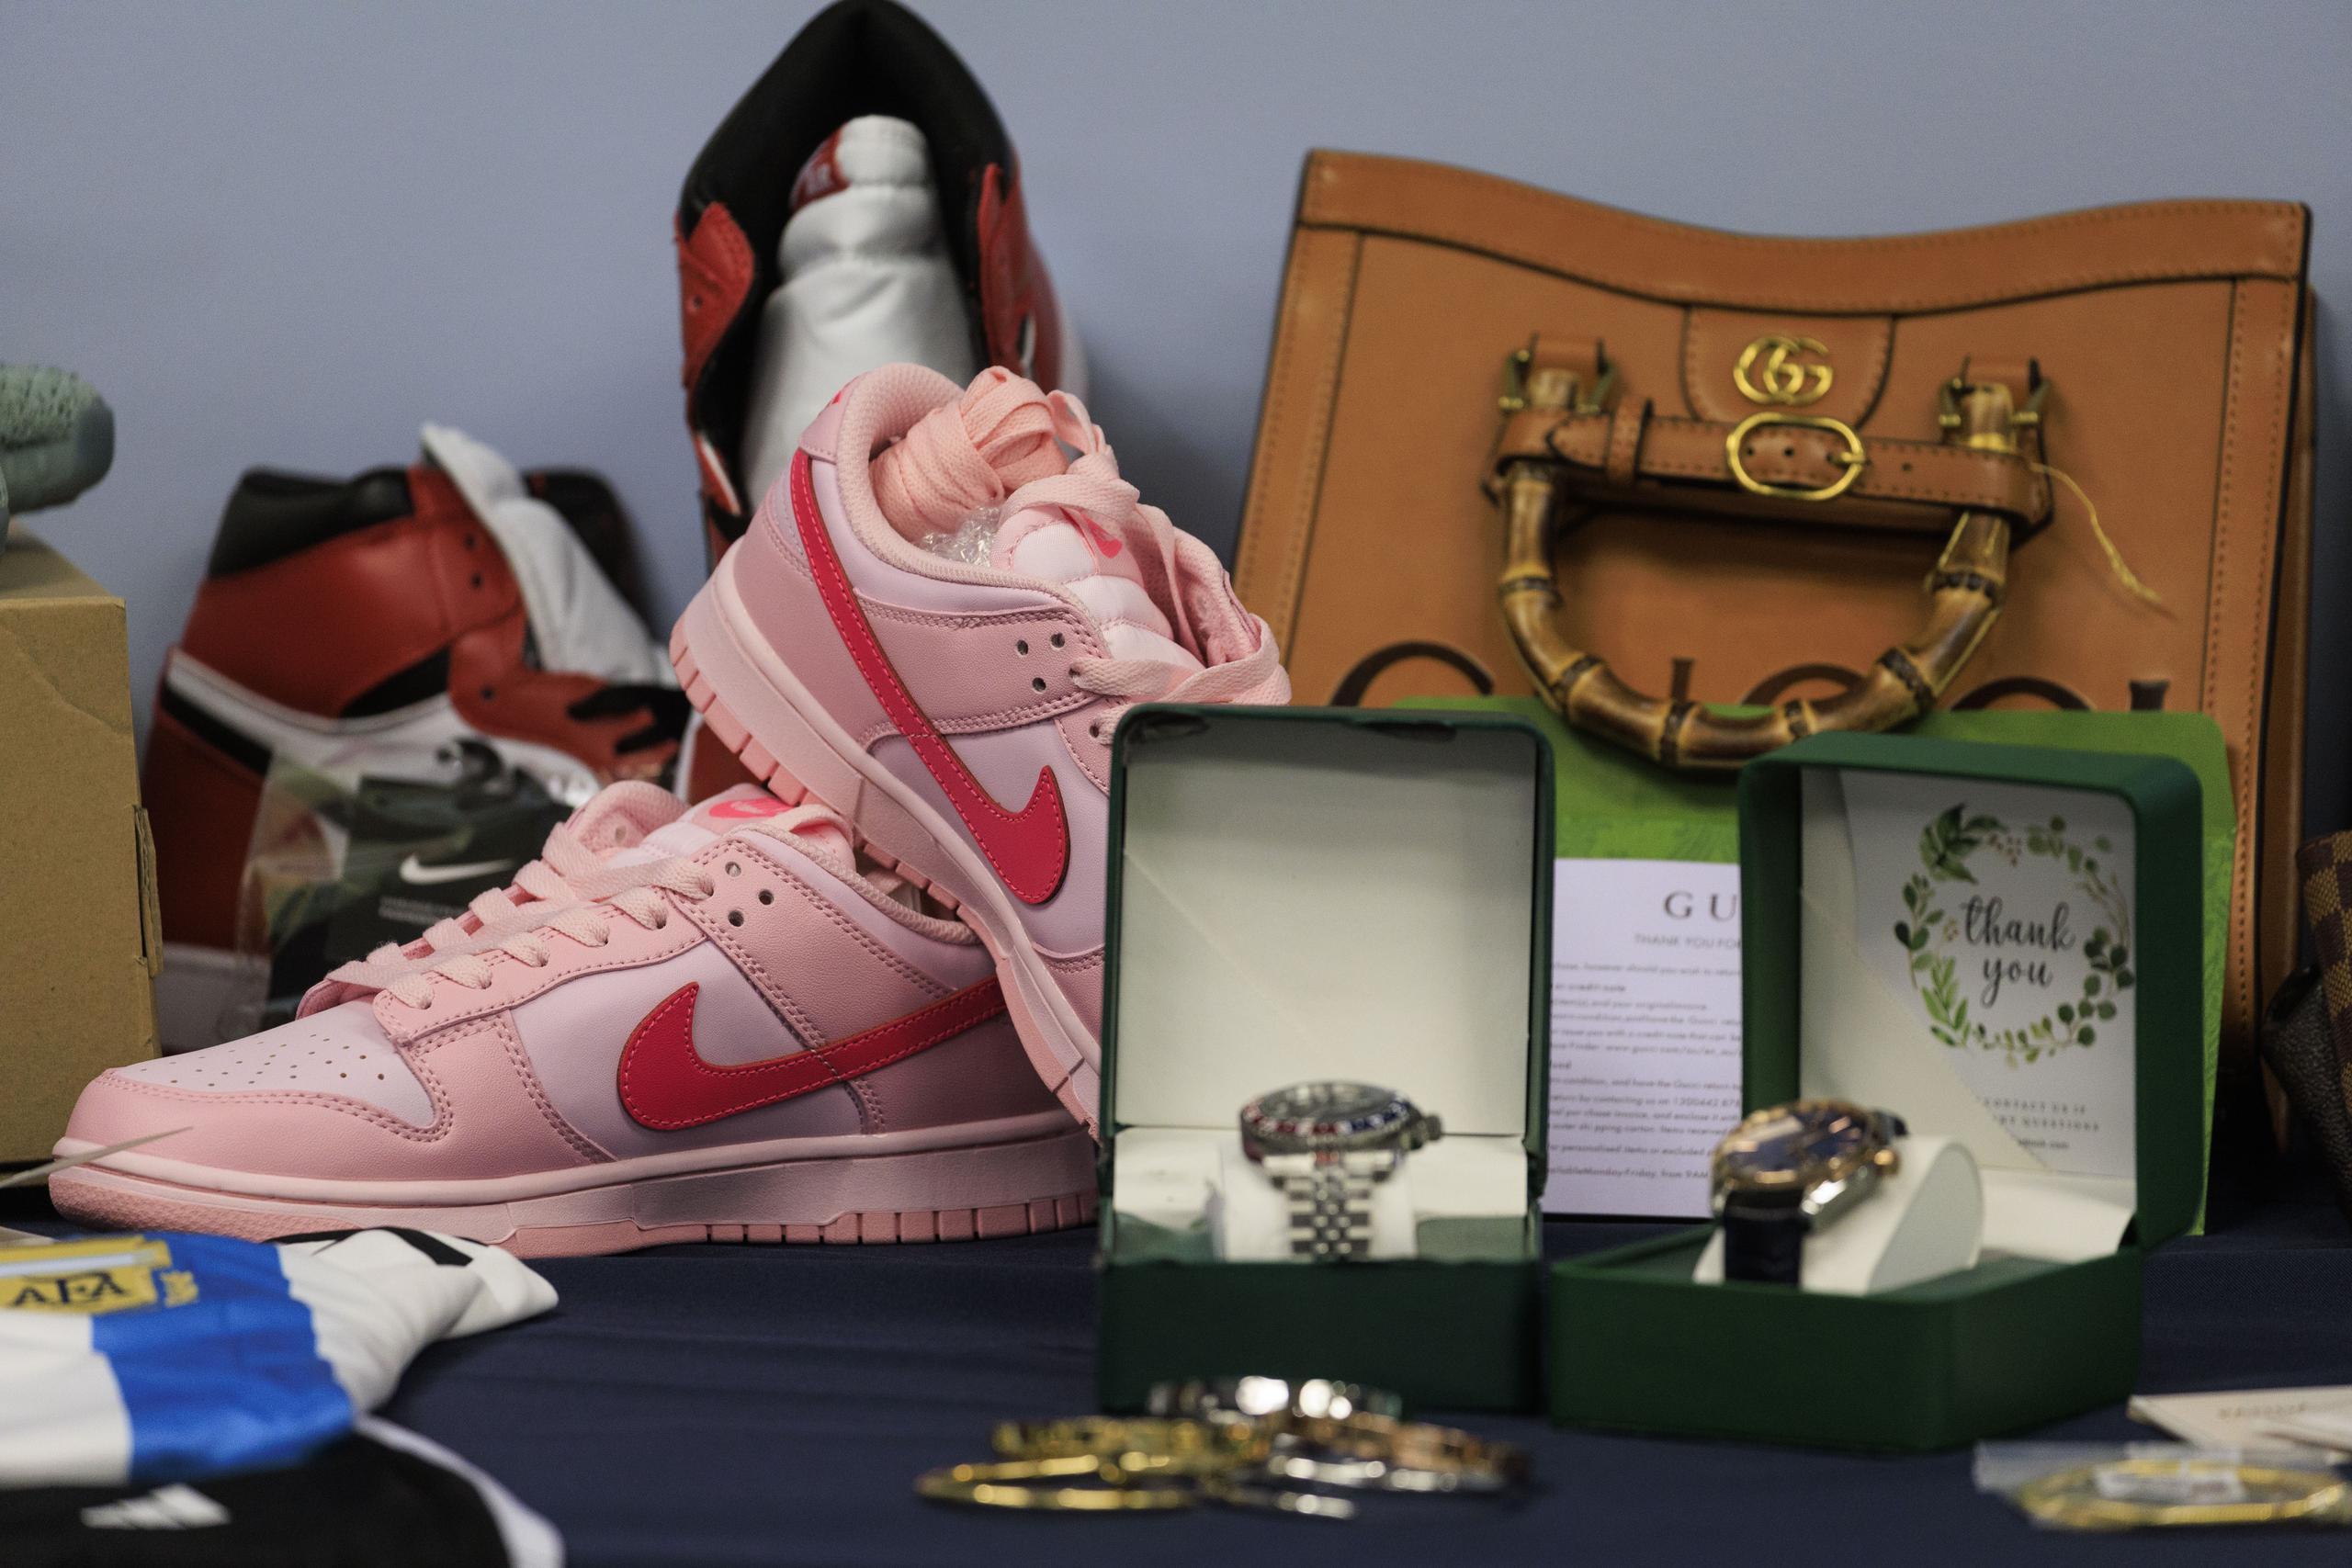 En la imagen, algunos de los artículos falsos, como GUCCI, tenis Jordan y Nike y relojes Rolex.